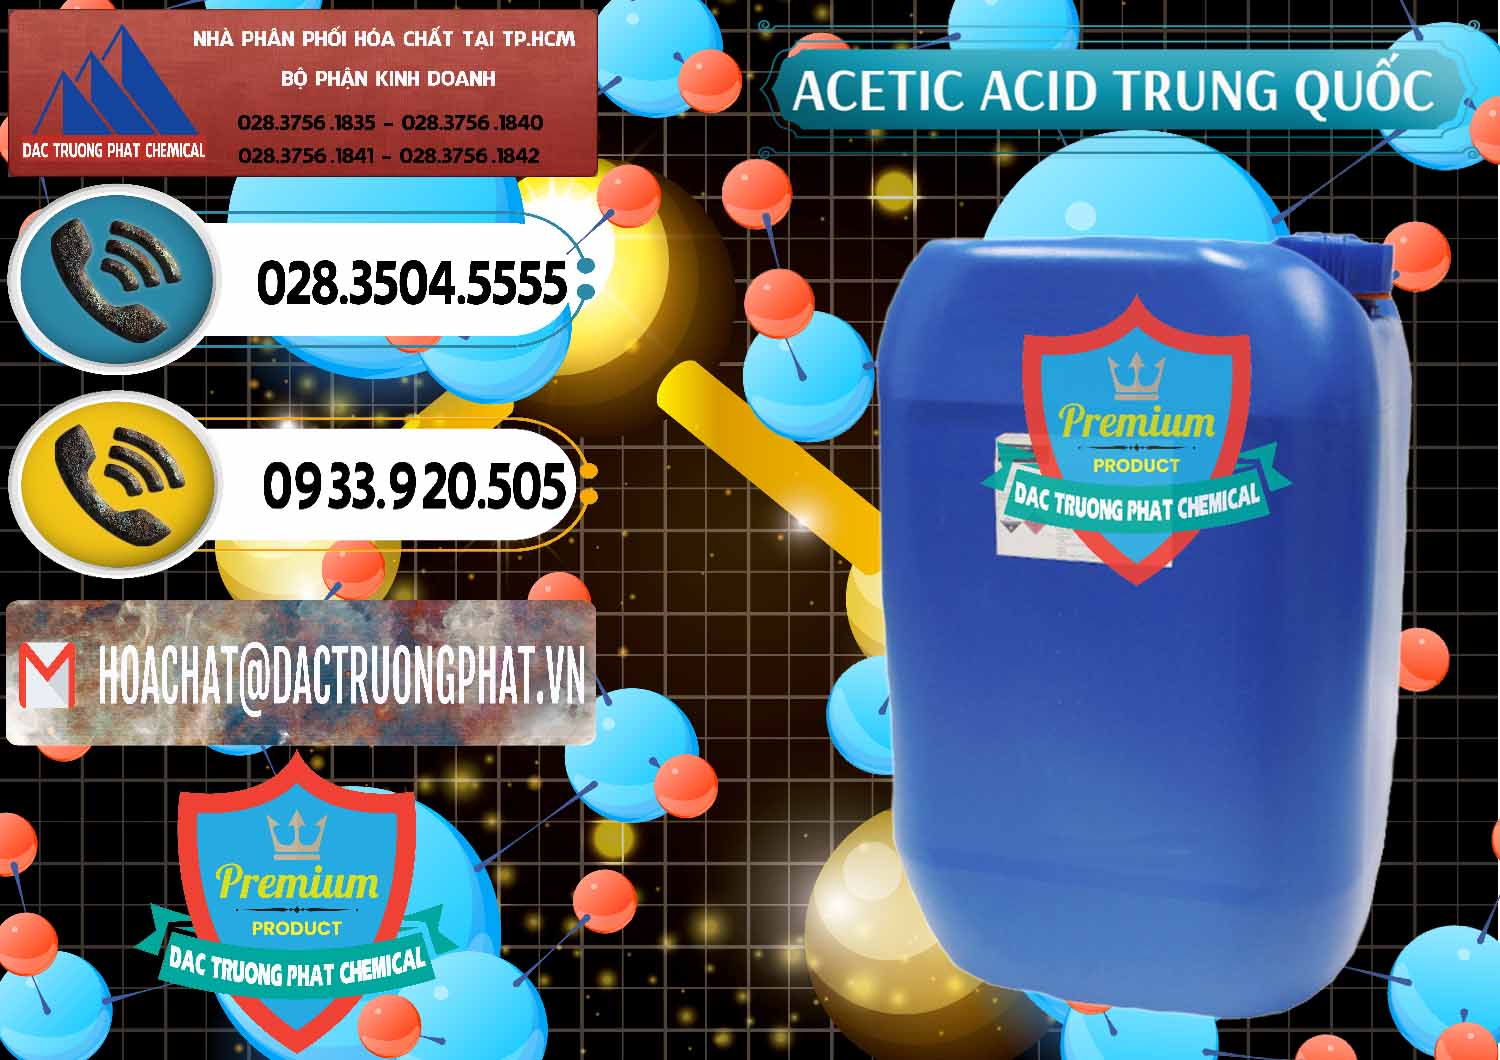 Chuyên nhập khẩu - bán Acetic Acid – Axit Acetic Trung Quốc China - 0358 - Công ty bán _ cung cấp hóa chất tại TP.HCM - hoachatdetnhuom.vn